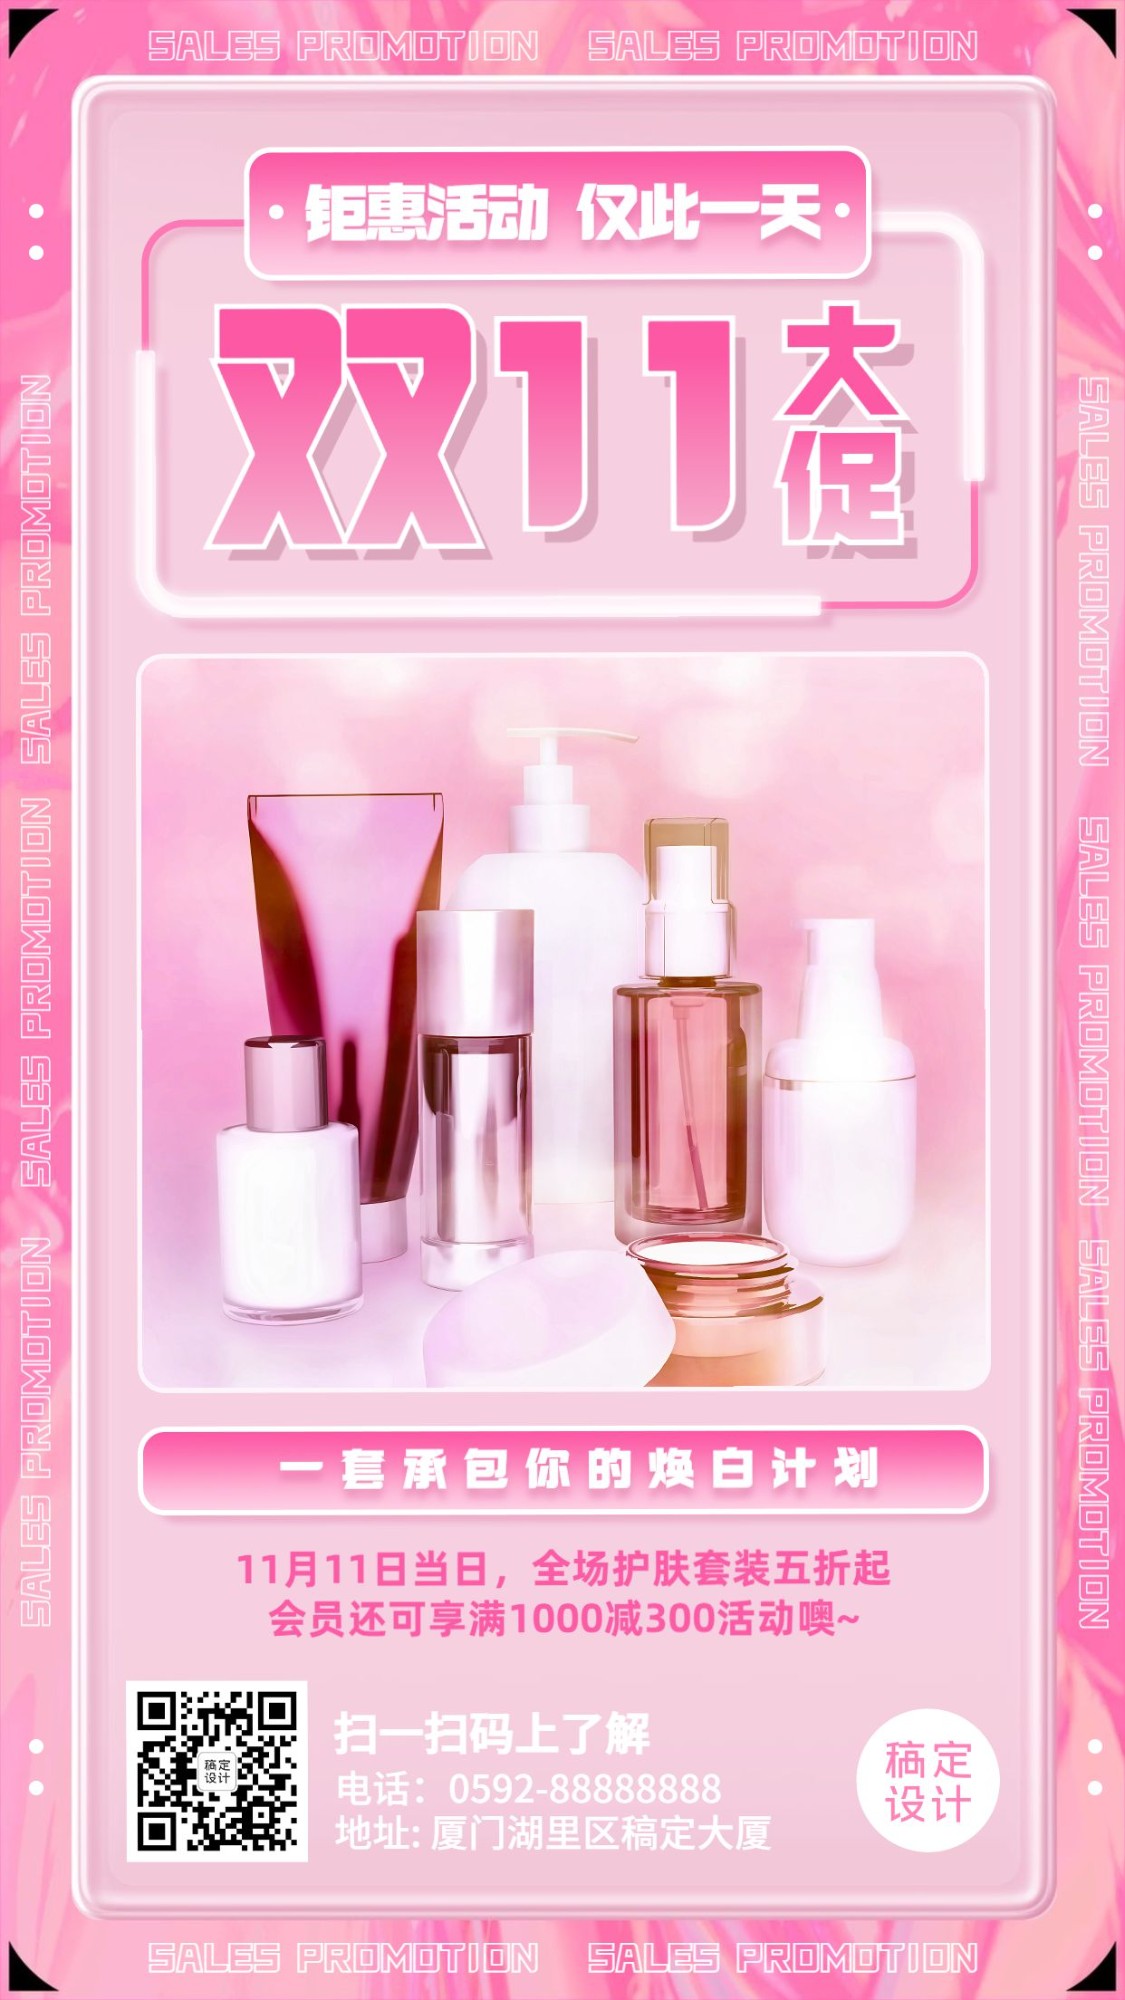 双十一美容美妆产品展示浪漫图框手机海报预览效果